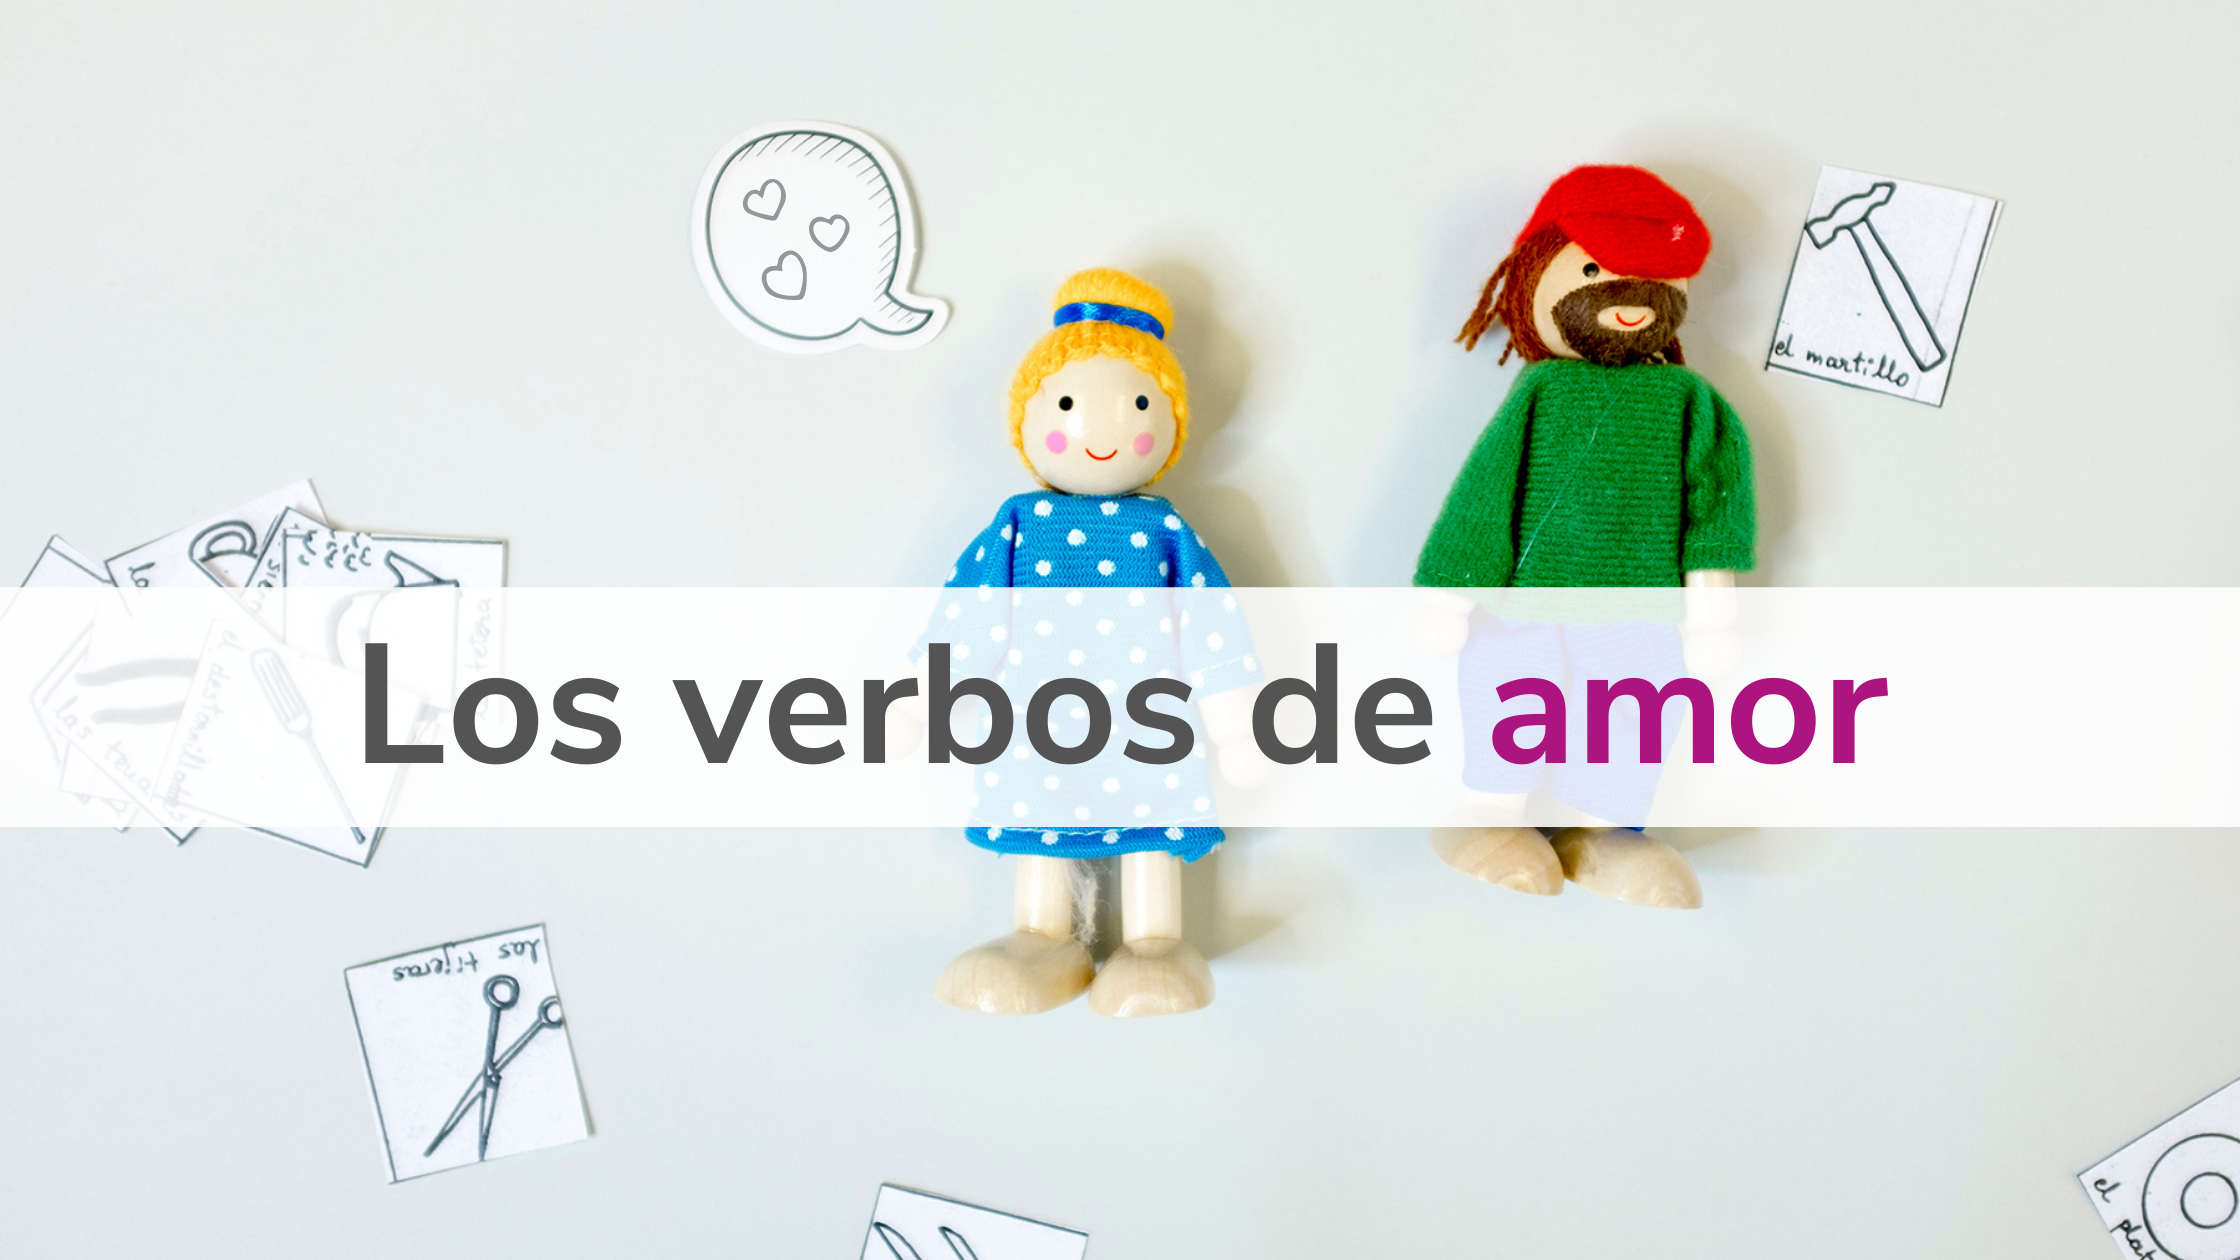 Los verbos de amor 💖 29 sloves, která budete milovat